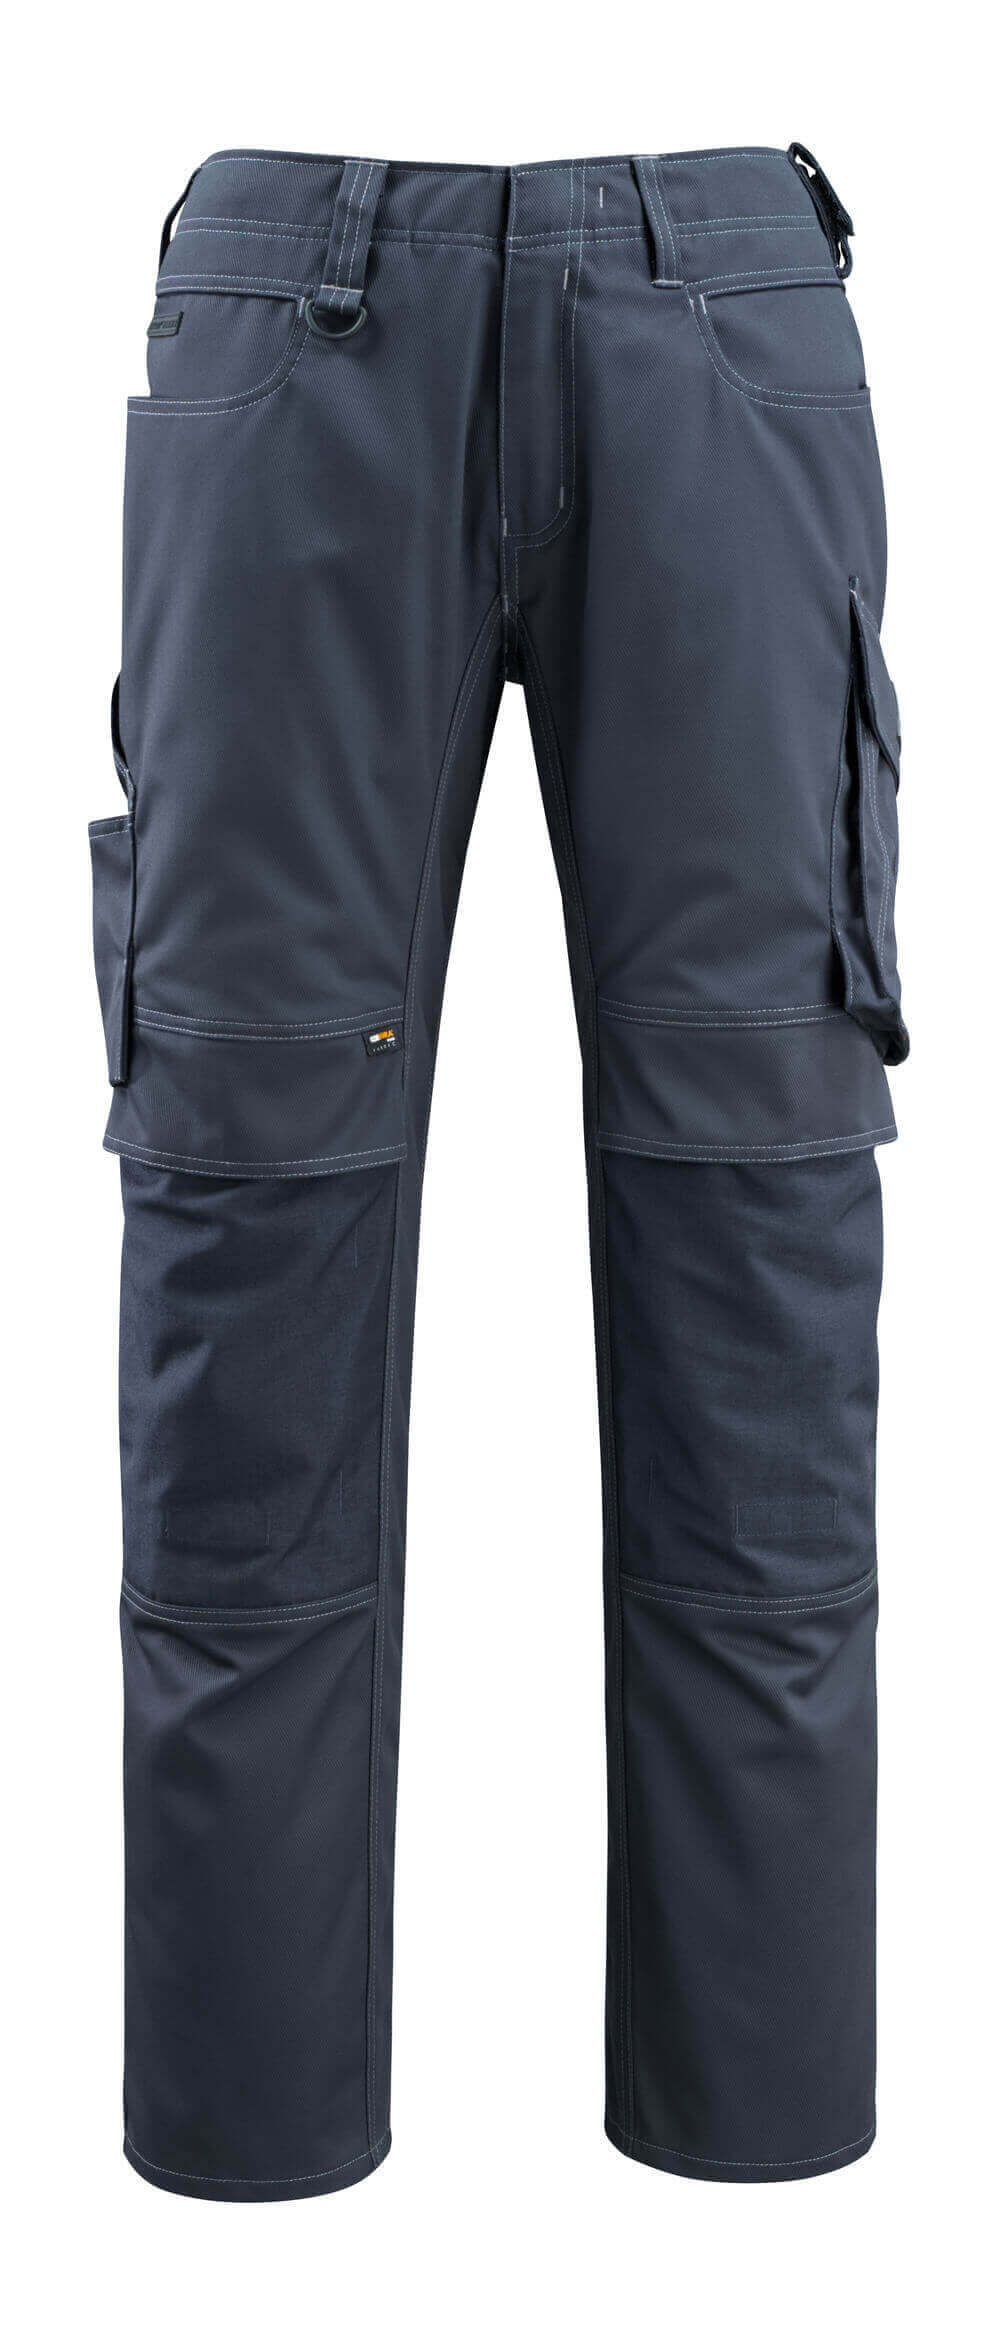 12479-203-010 Pantaloni con tasche porta-ginocchiere - blu navy scuro